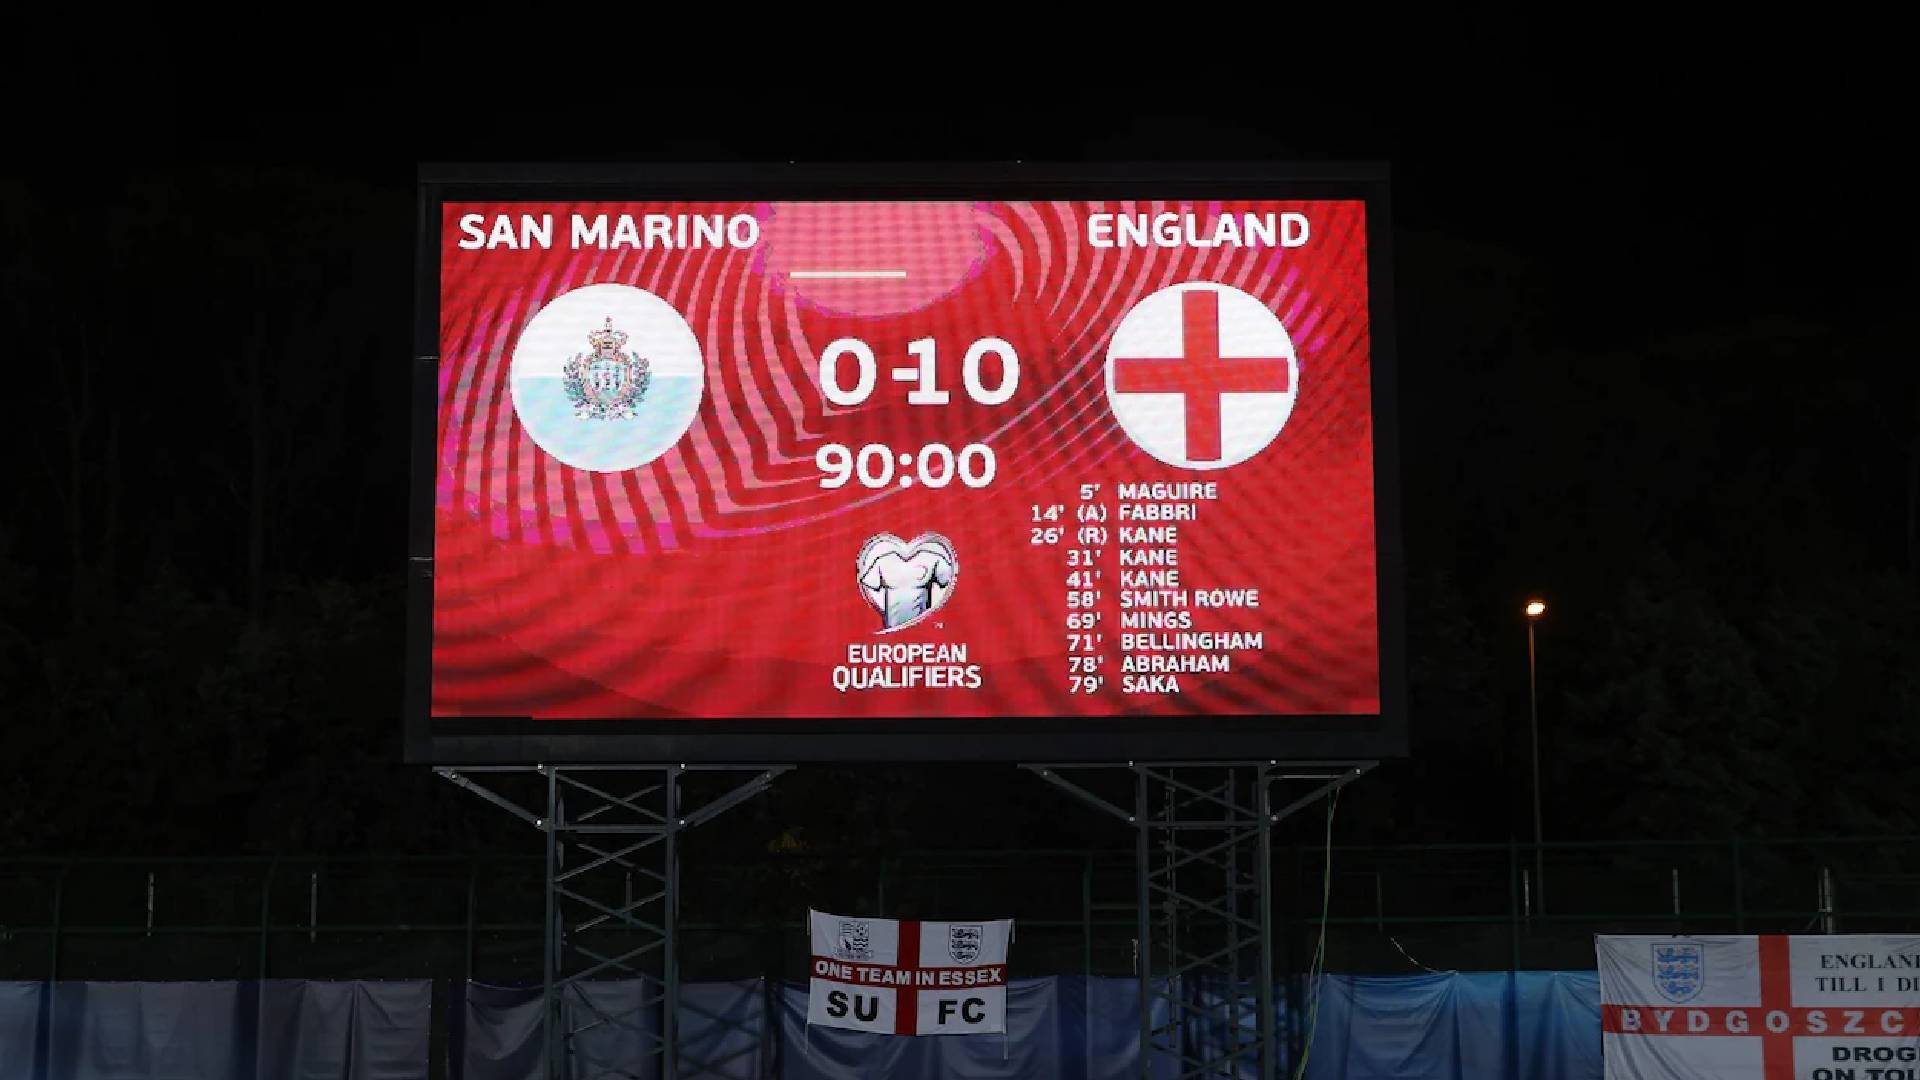 San Marino ‘Kaku’ Dibantai England, Penjaga Gawang England Boleh ‘Tidur’ Sepanjang Perlawanan